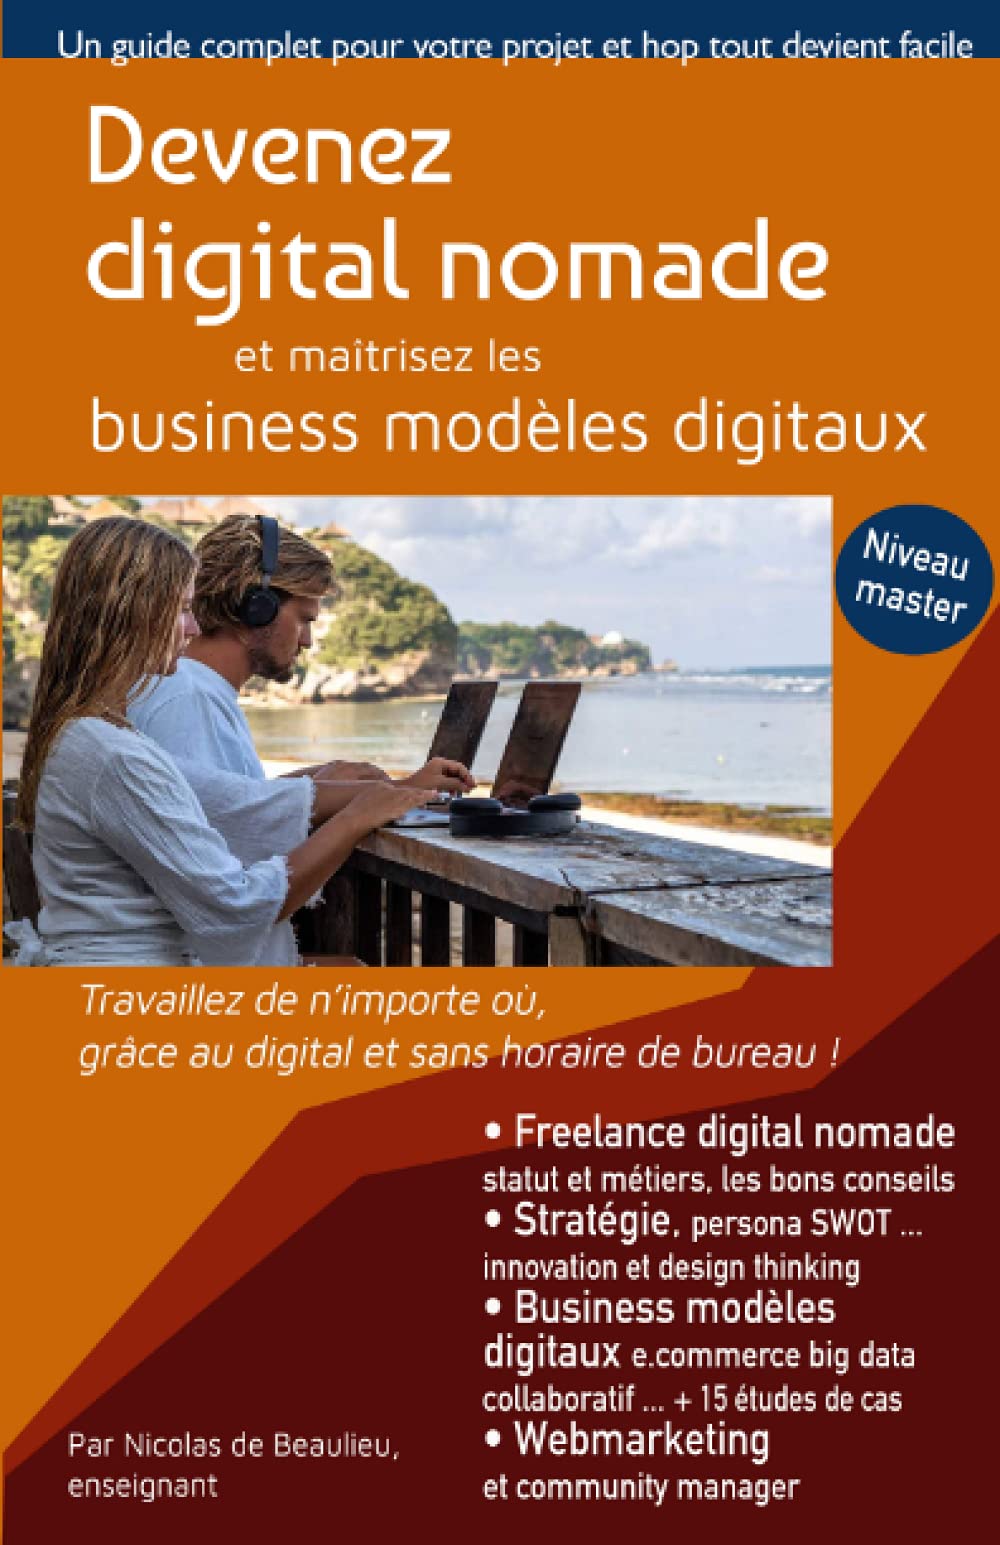 Devenez digital nomade, et maîtrisez les business modèles digitaux: Travaillez de n'importe où, grâce au digital et sans boutique !